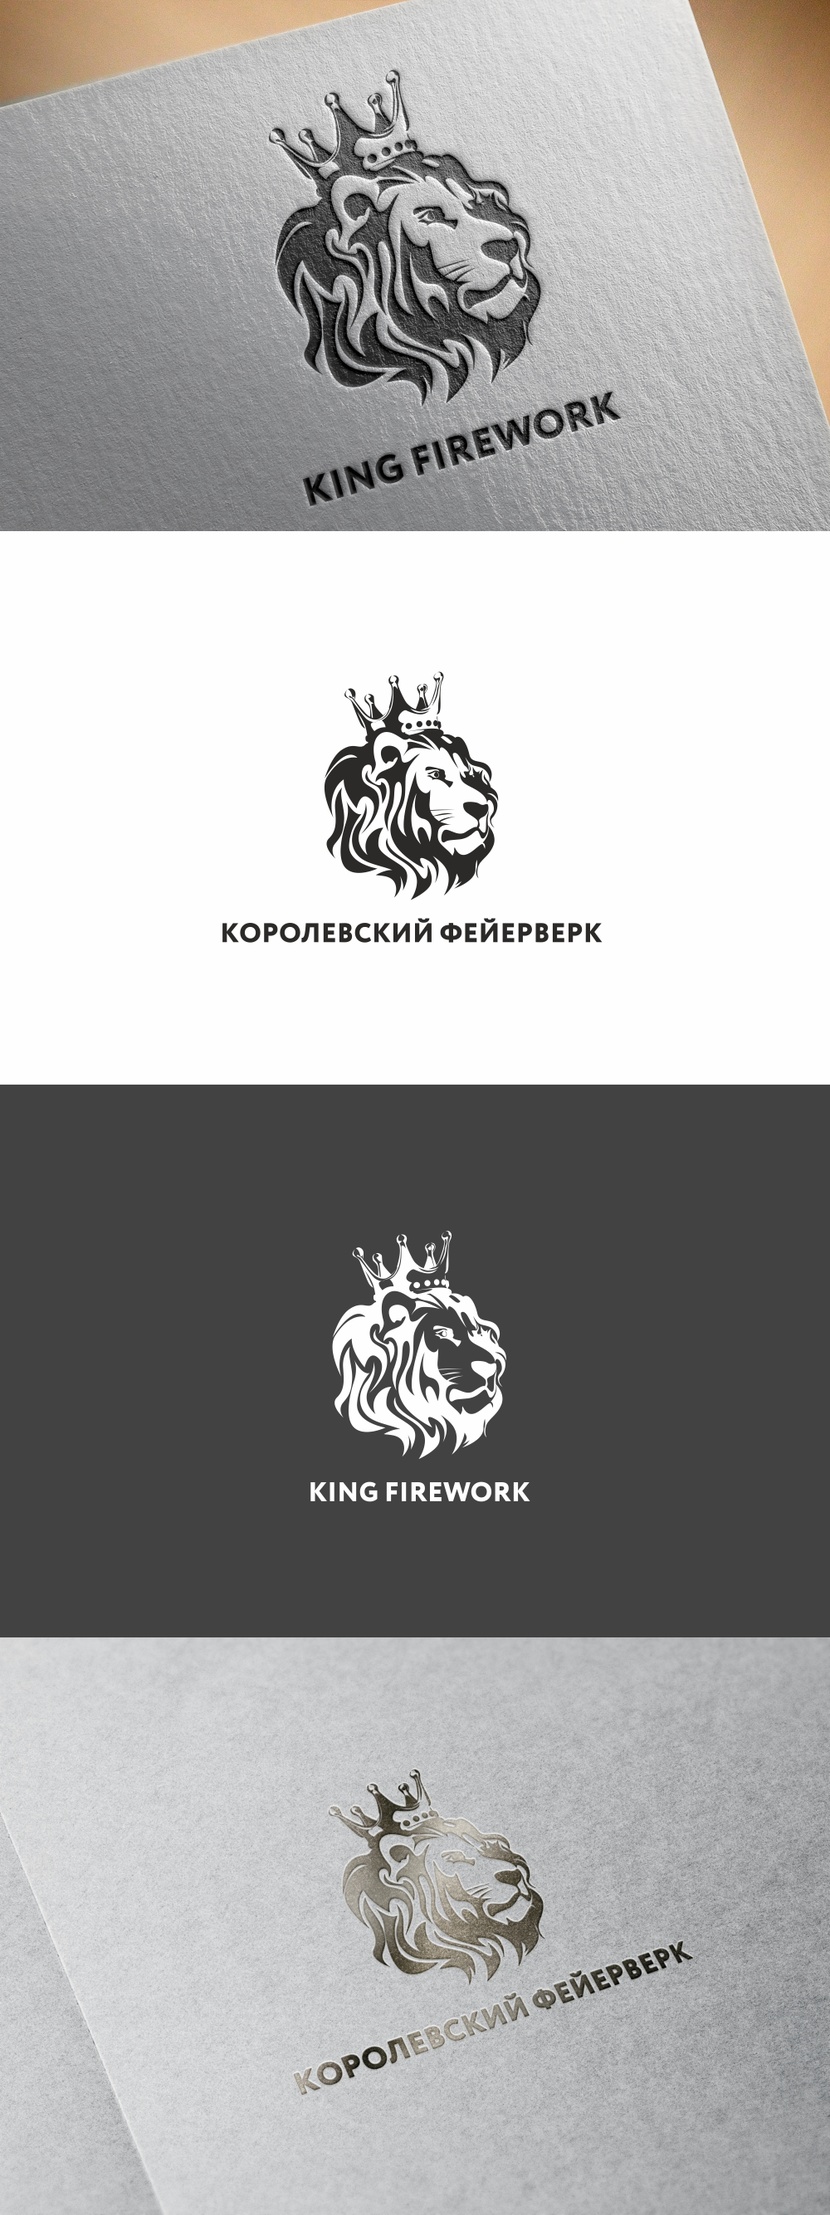 Доработка - Разработка логотипа компании "Королевский фейерверк"